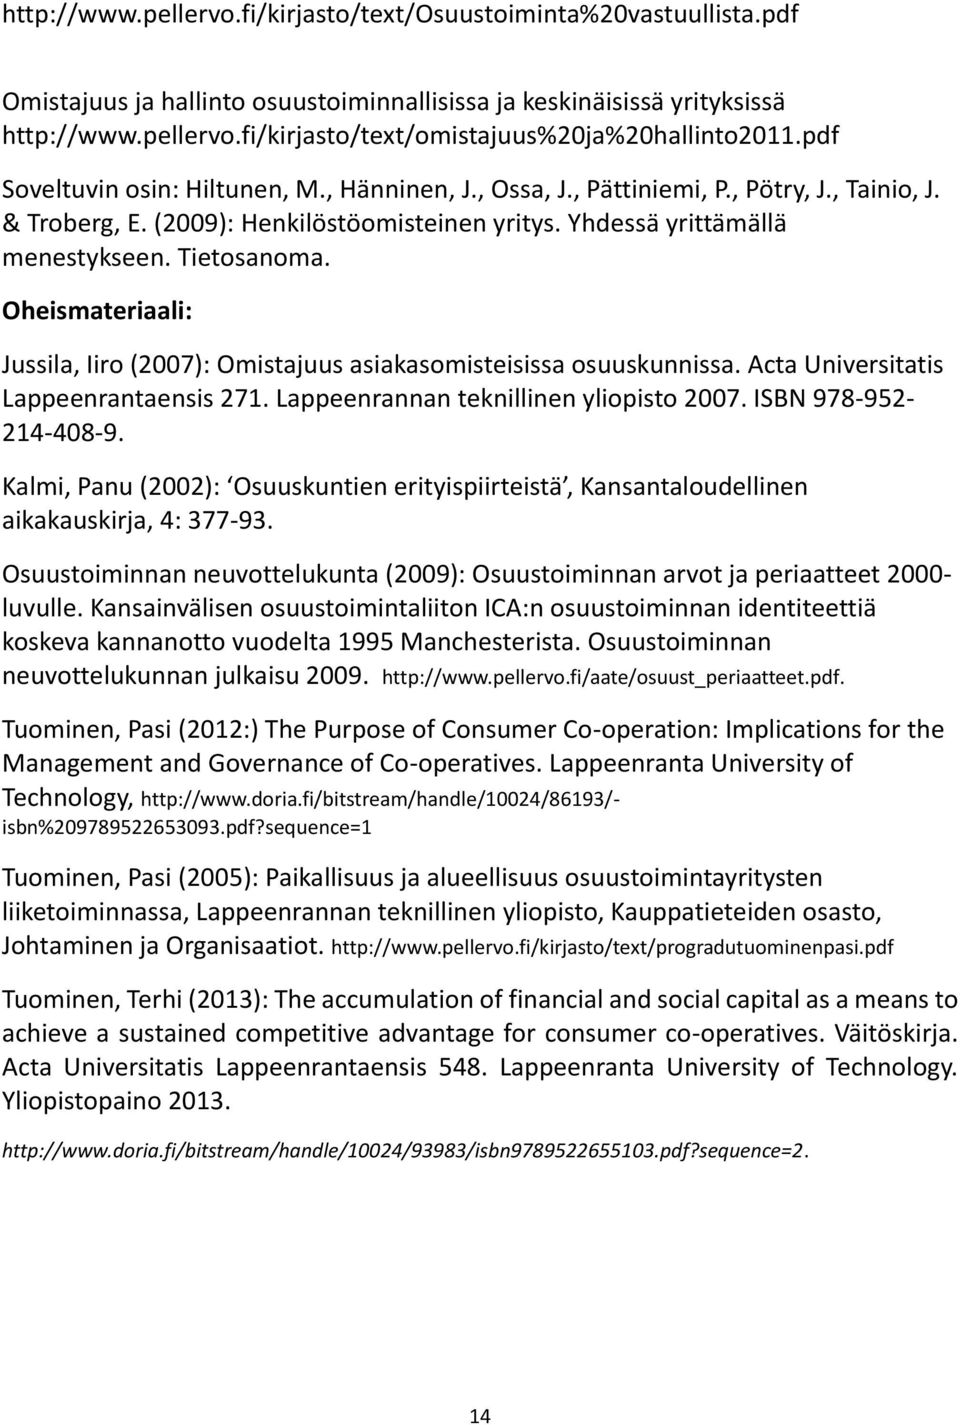 Oheismateriaali: Jussila, Iiro (2007): Omistajuus asiakasomisteisissa osuuskunnissa. Acta Universitatis Lappeenrantaensis 271. Lappeenrannan teknillinen yliopisto 2007. ISBN 978-952- 214-408-9.